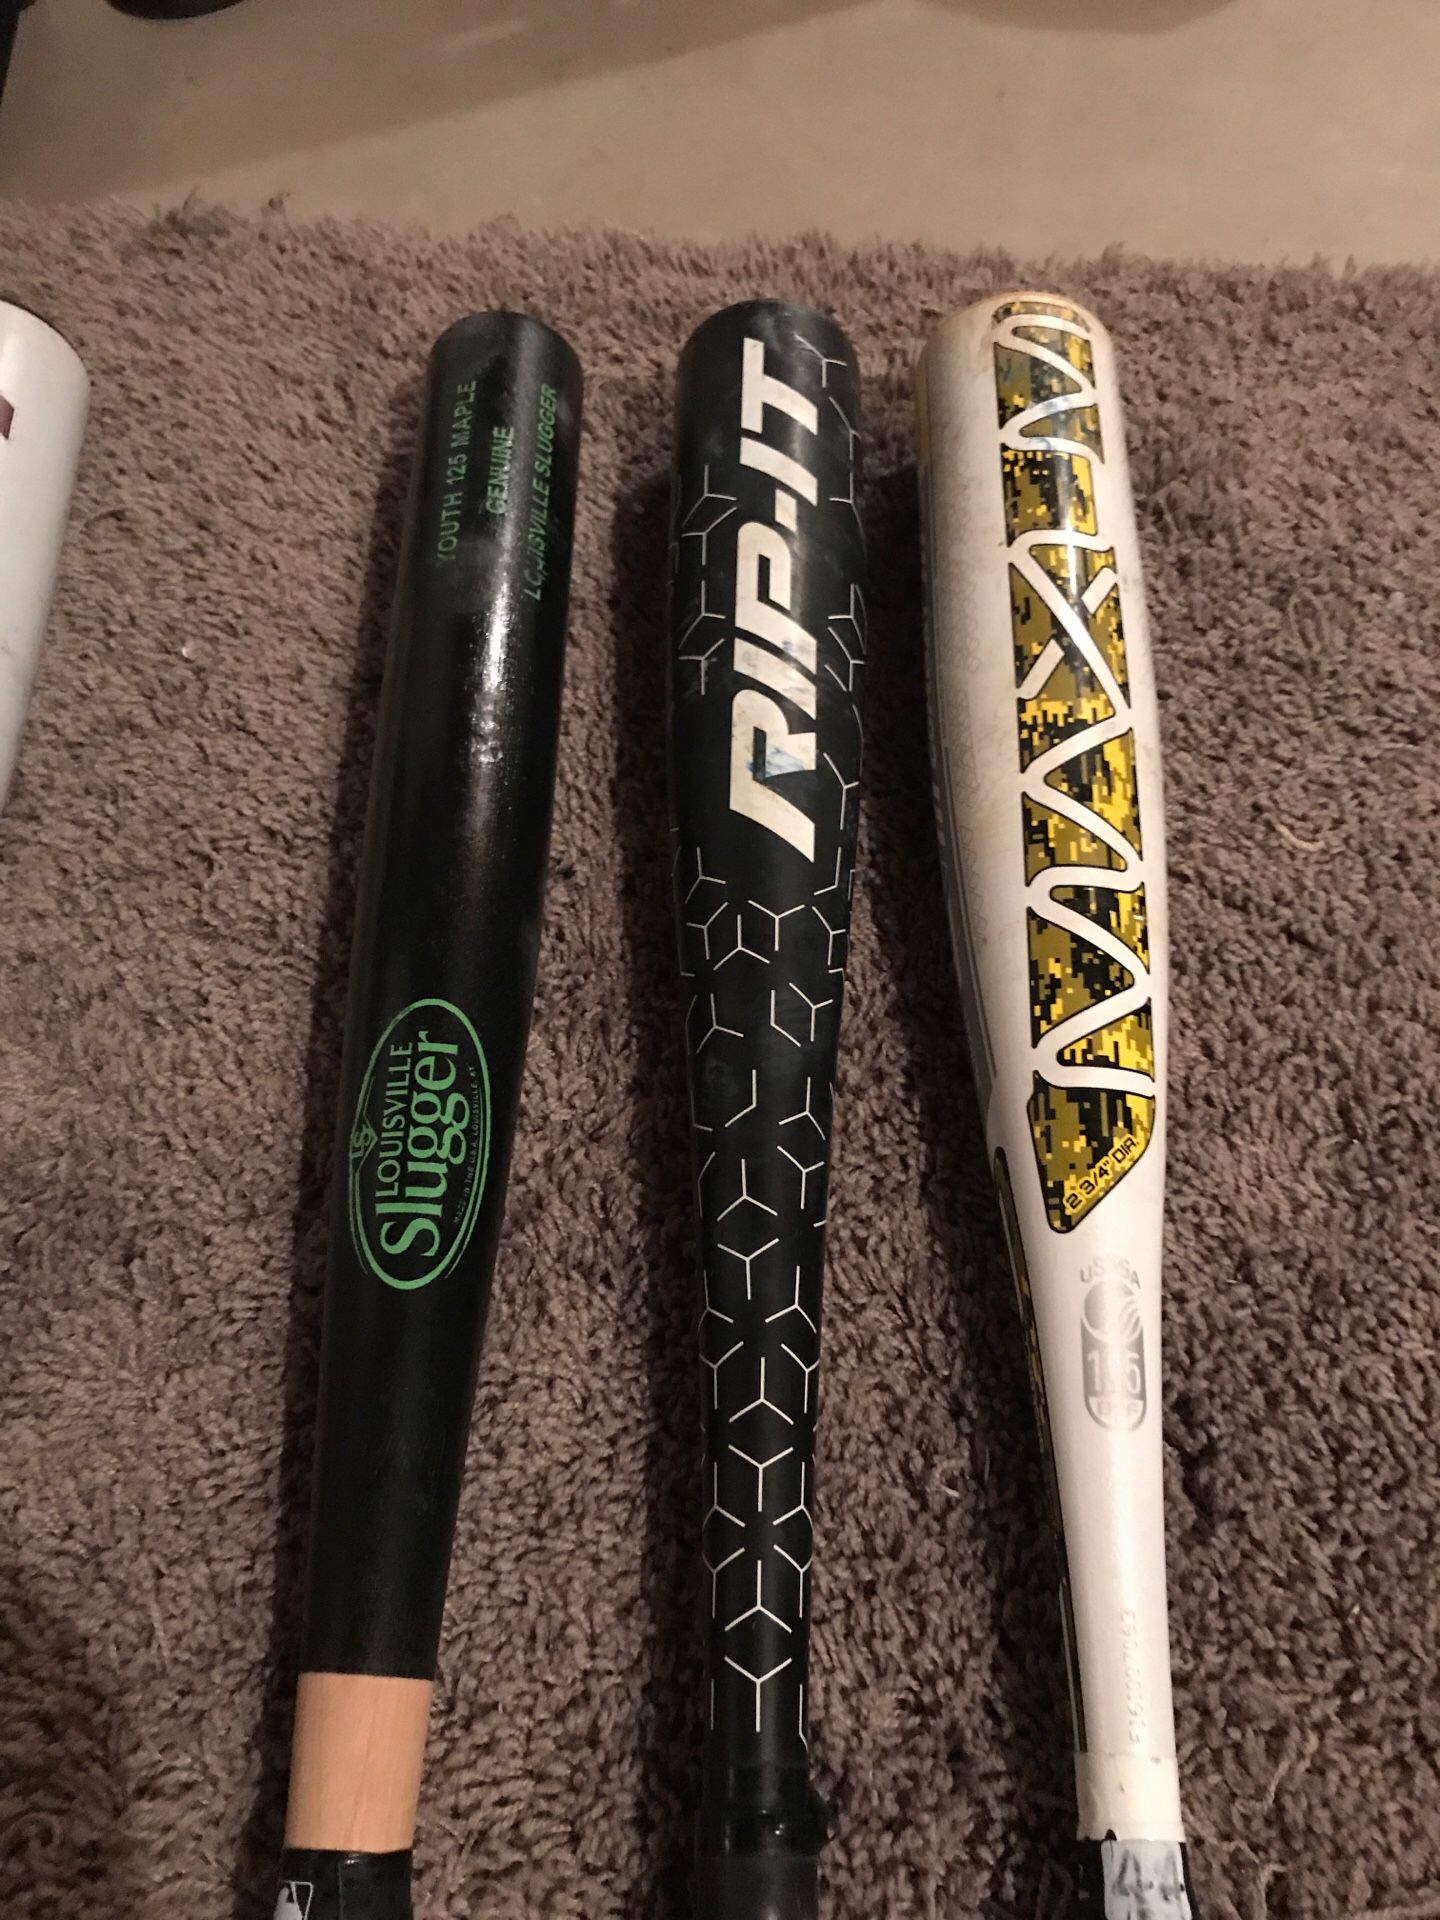 Assorted baseball bats